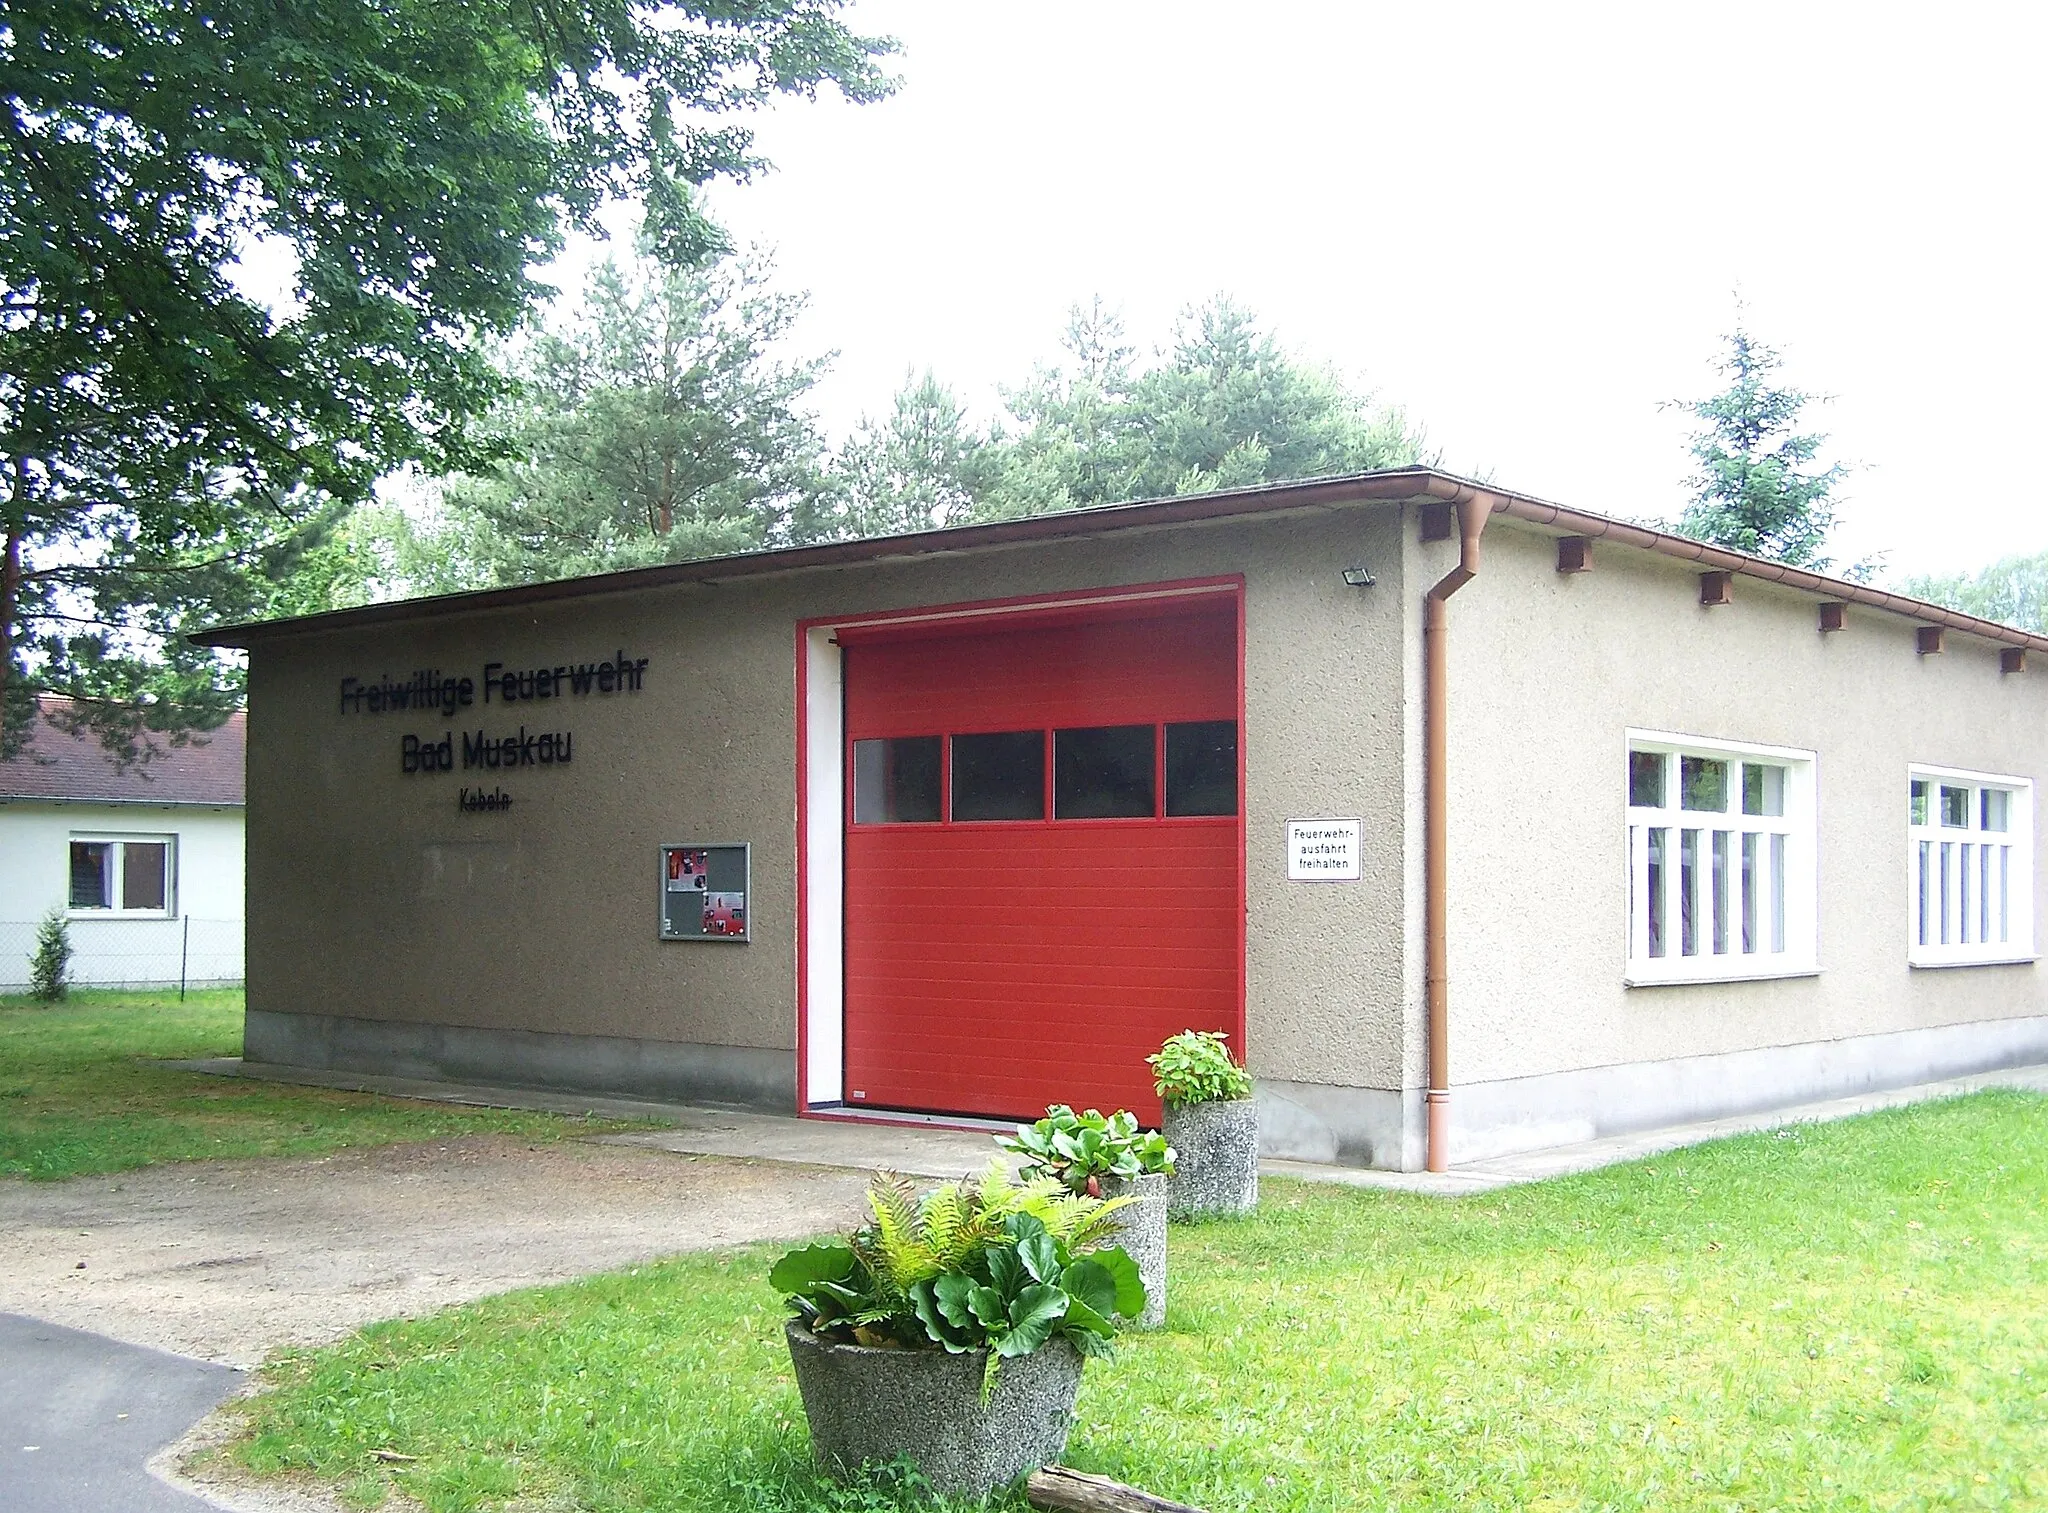 Photo showing: Freiwillige Feuerwehr in de:Köbeln, Bad Muskau, Landkreis Görlitz